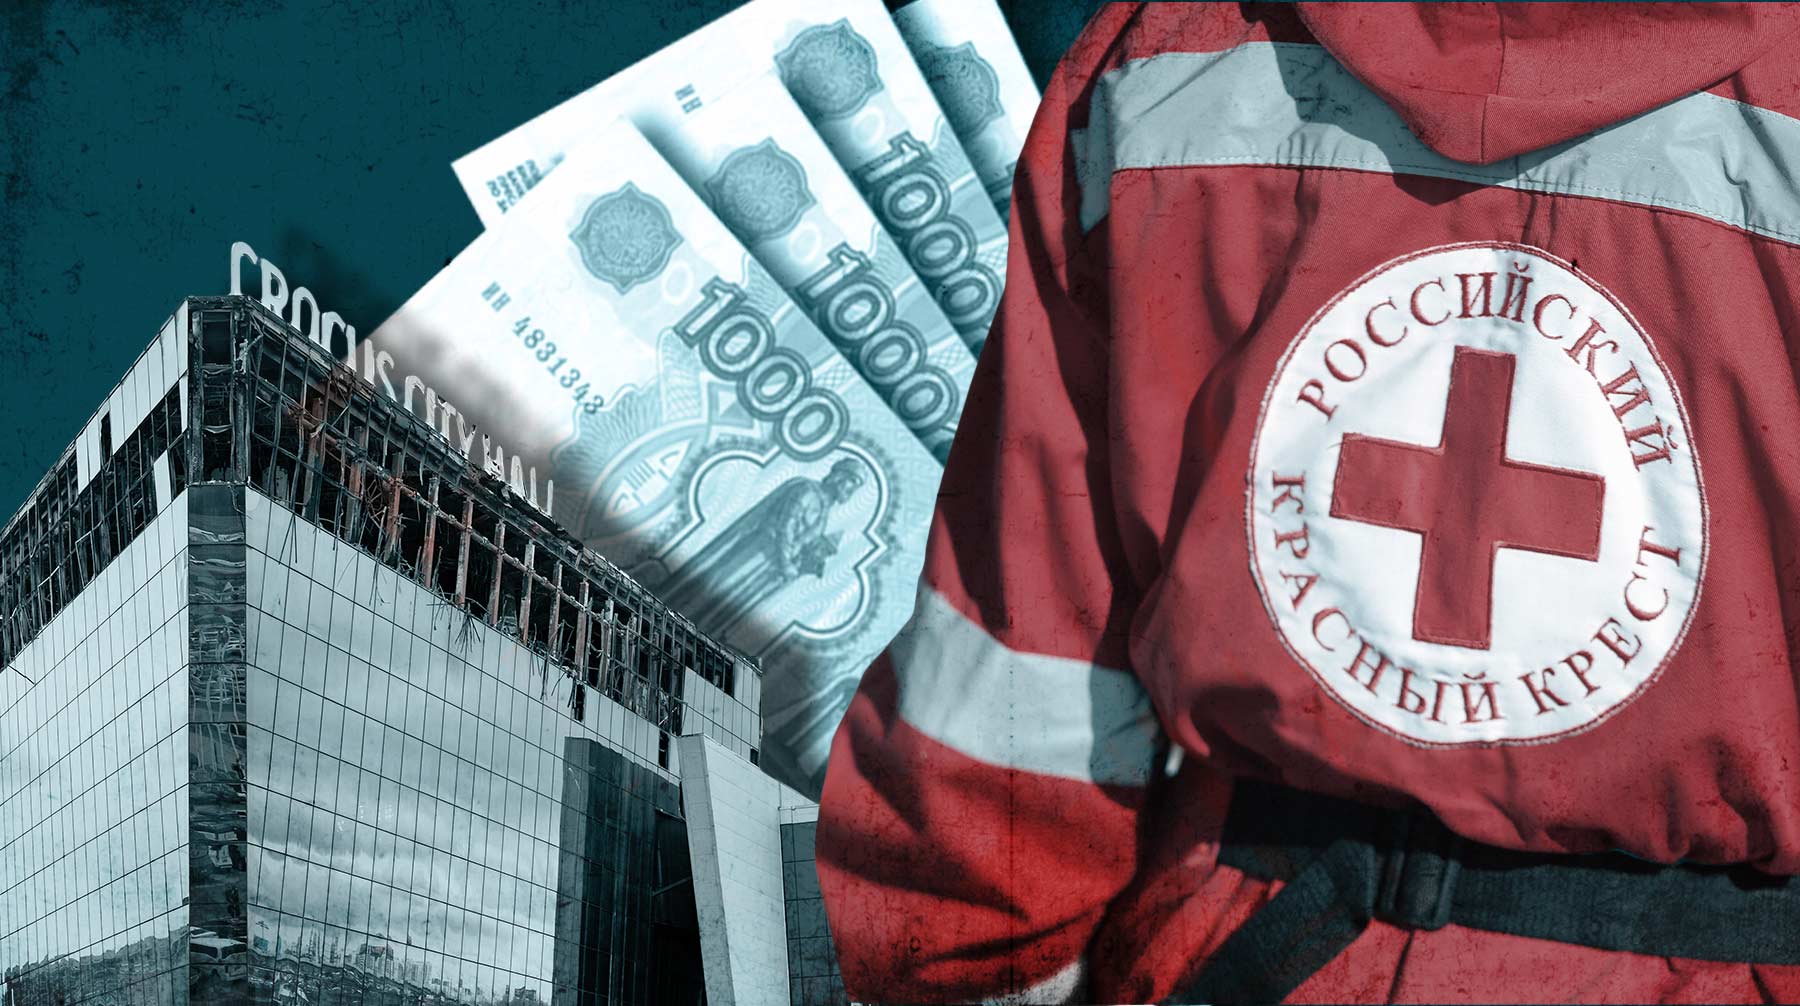 Всего в организации собрали более 1,7 миллиарда рублей Коллаж: Daily Storm